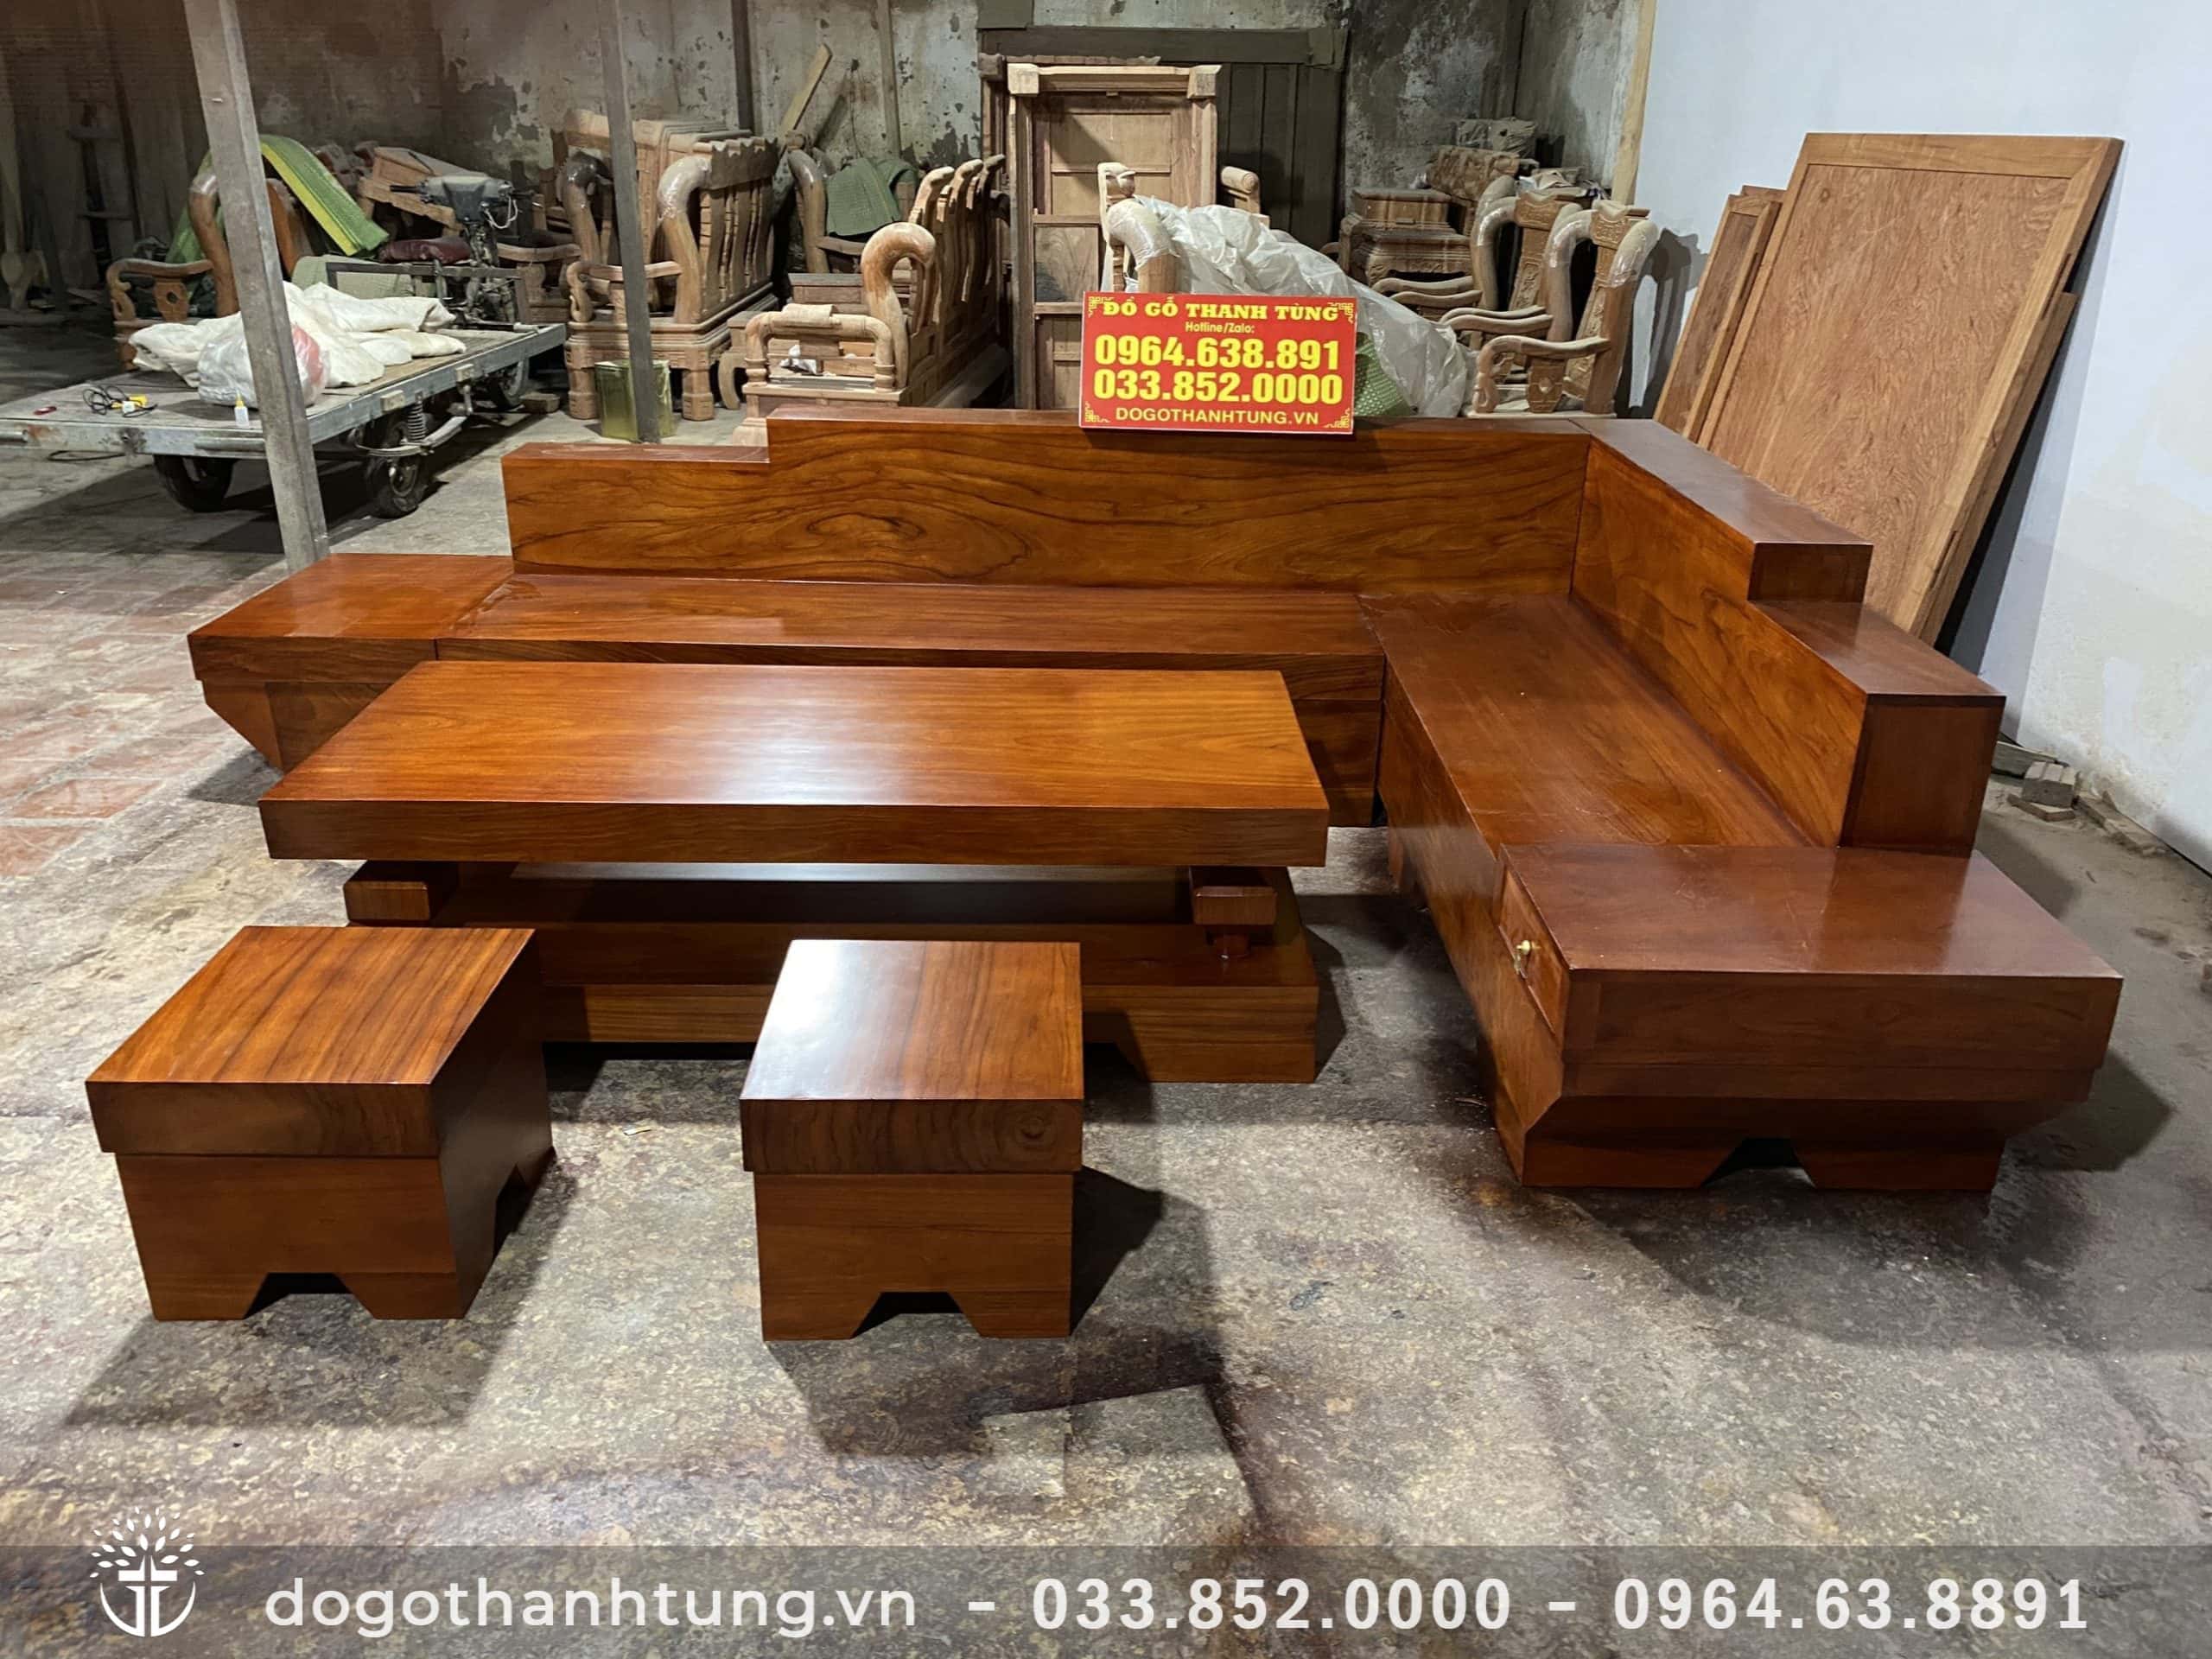 Sofa gỗ kate nguyên khối (anh Công - Sóc Sơn) - Đồ Gỗ Thanh Tùng